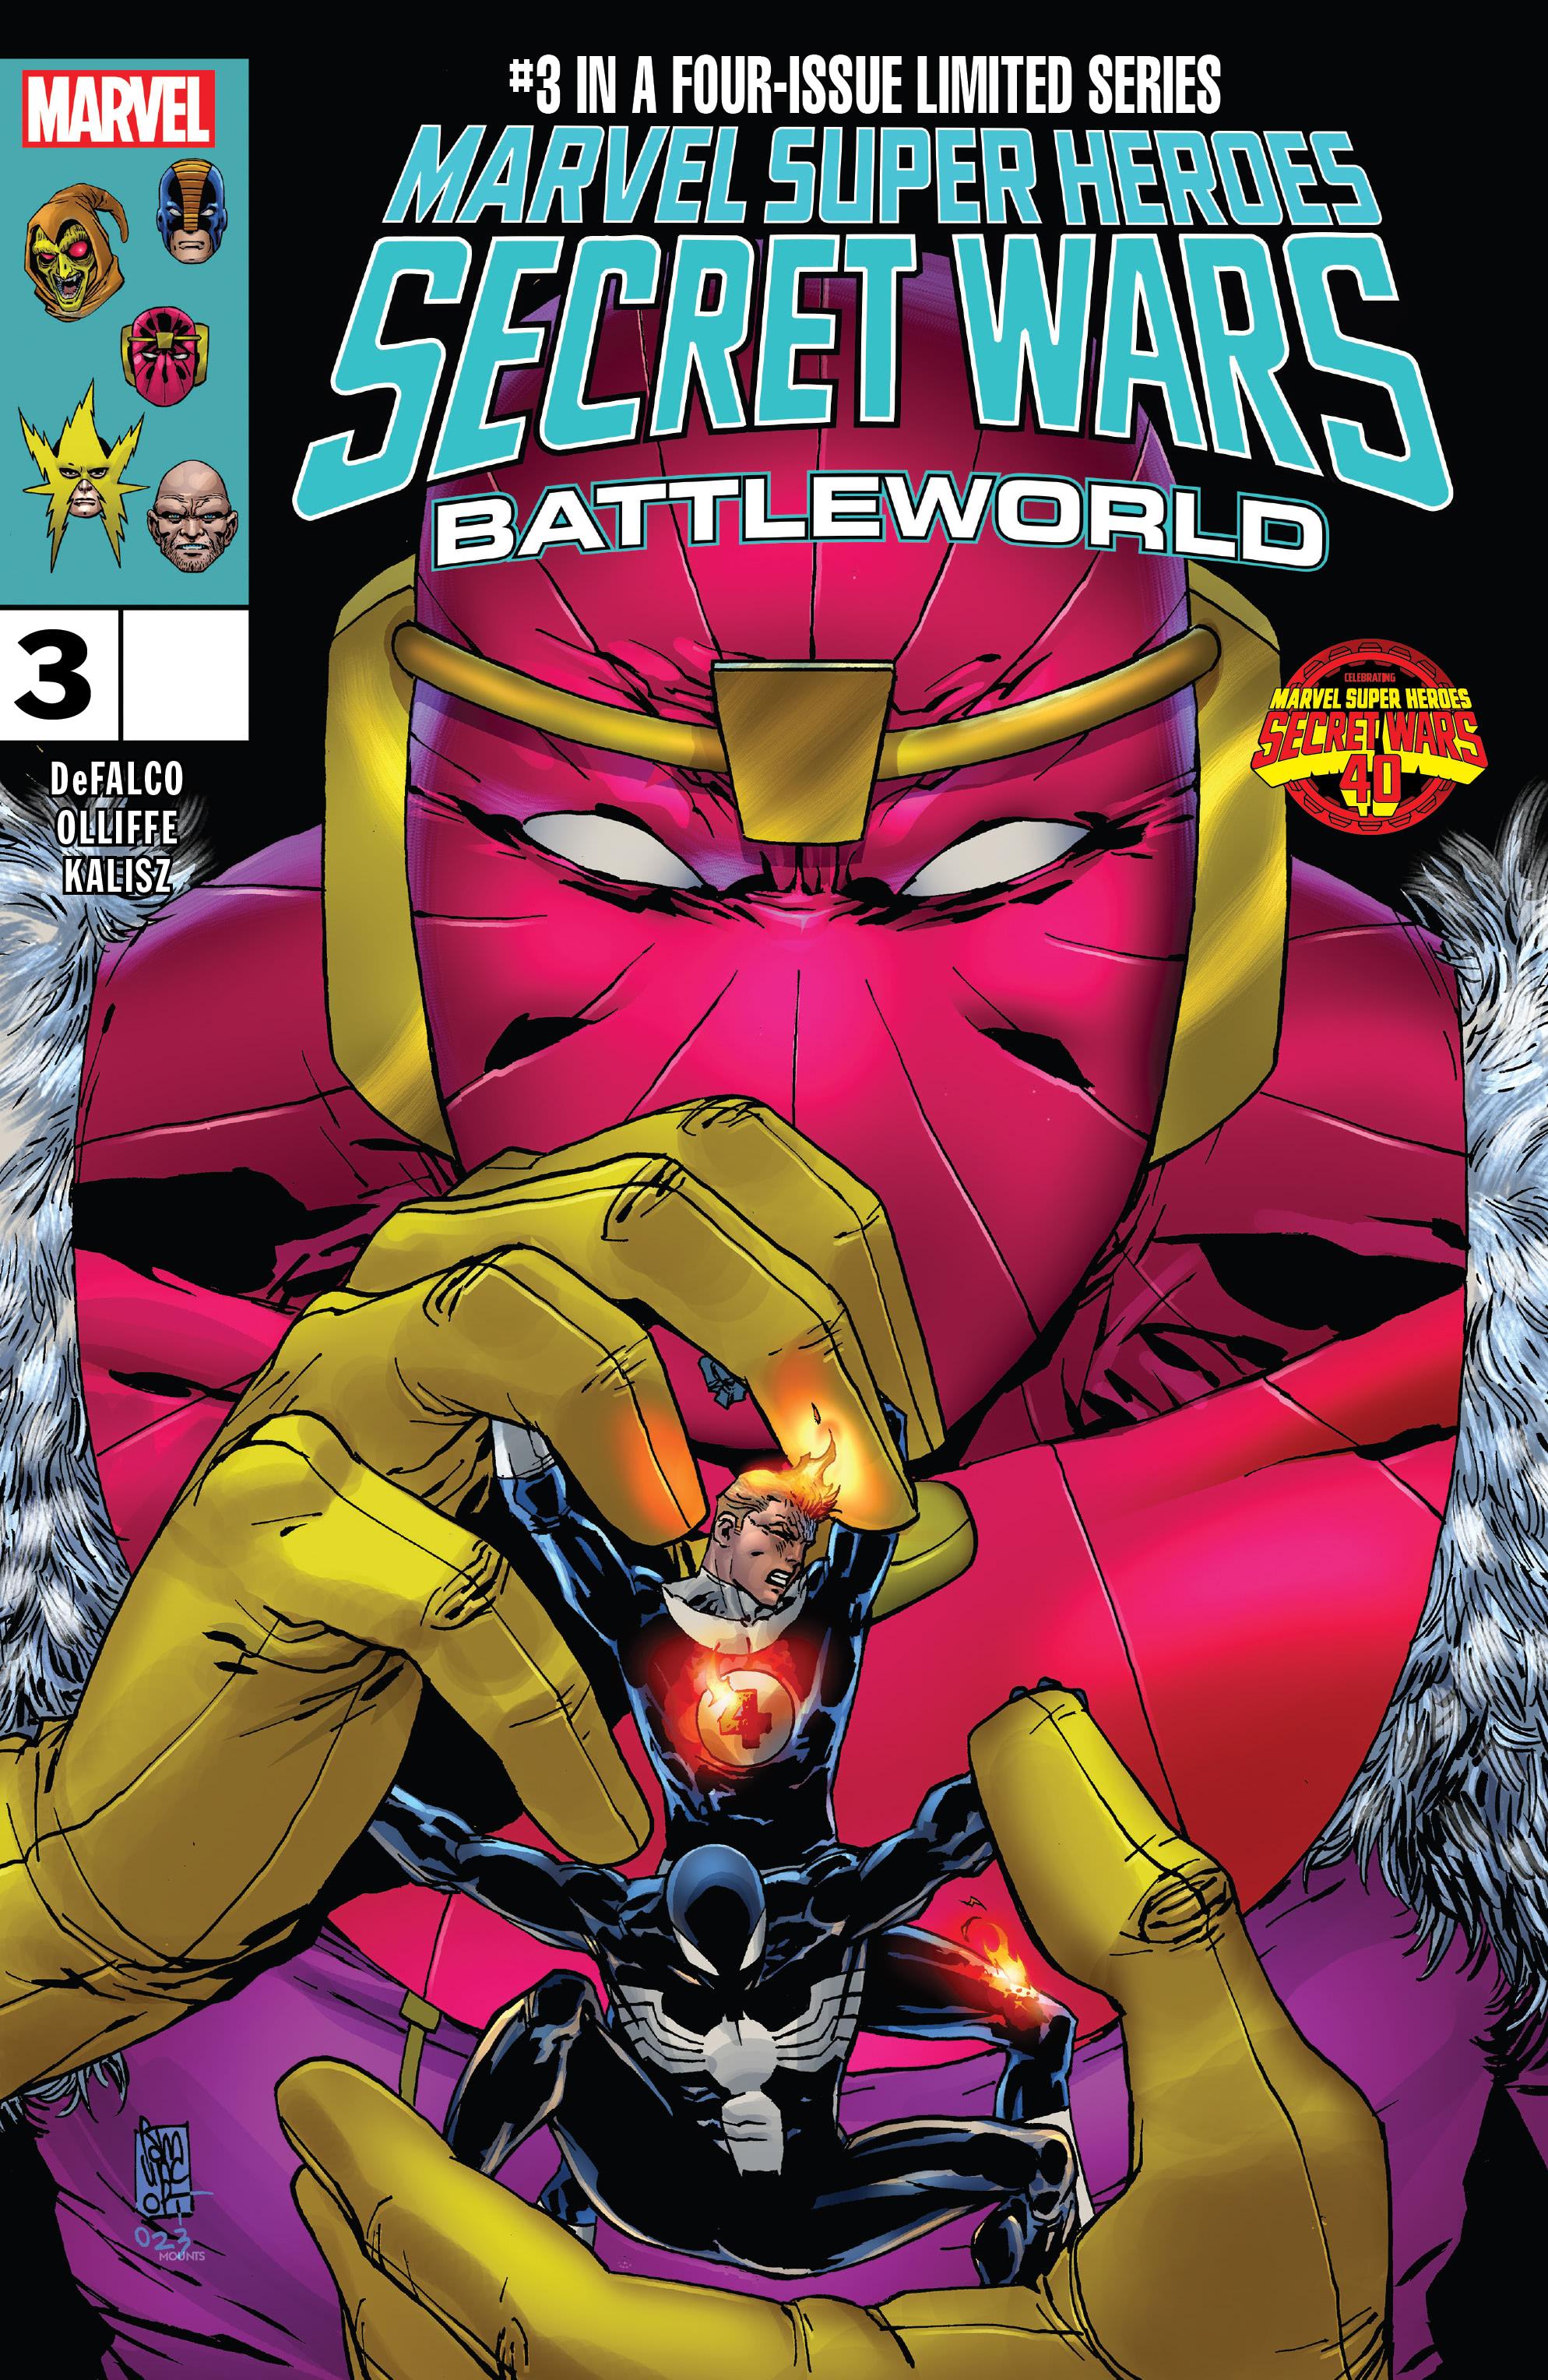 Read online Marvel Super Heroes Secret Wars: Battleworld comic -  Issue #3 - 1